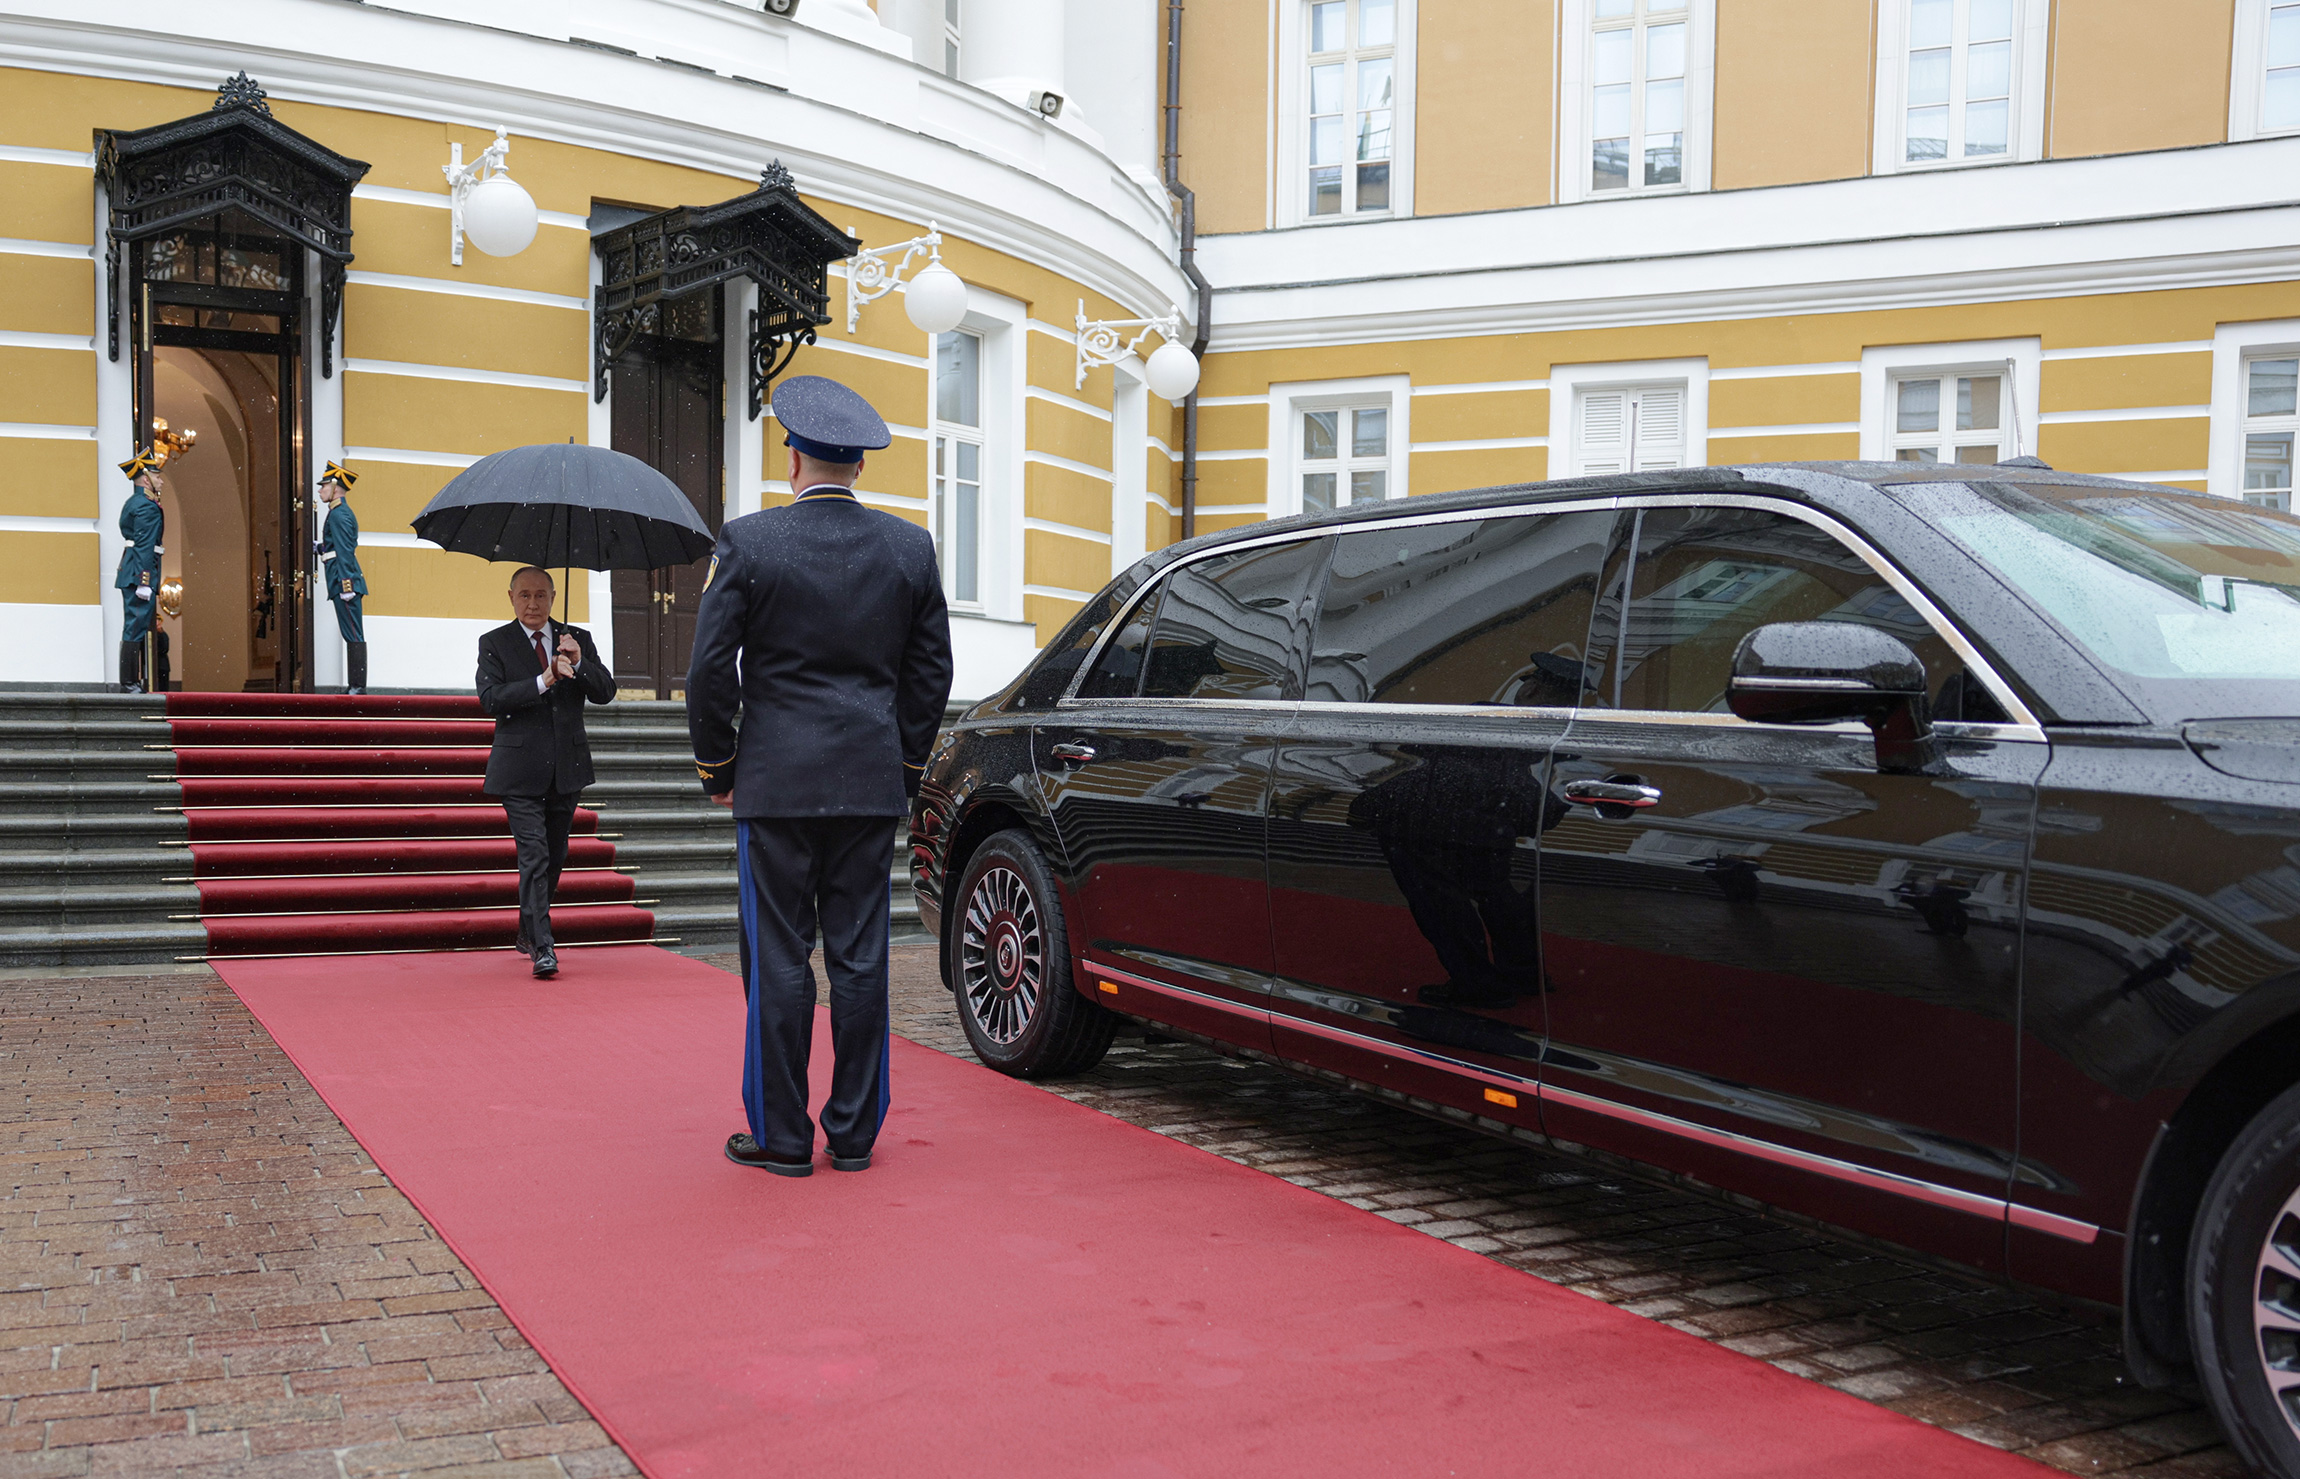 Владимир Путин отправился на инаугурацию по территории Кремля на обновленной версии автомобиля Aurus Senat. Машину показали впервые. В кортеже также в первый раз появились электромотоциклы Aurus Merlon.